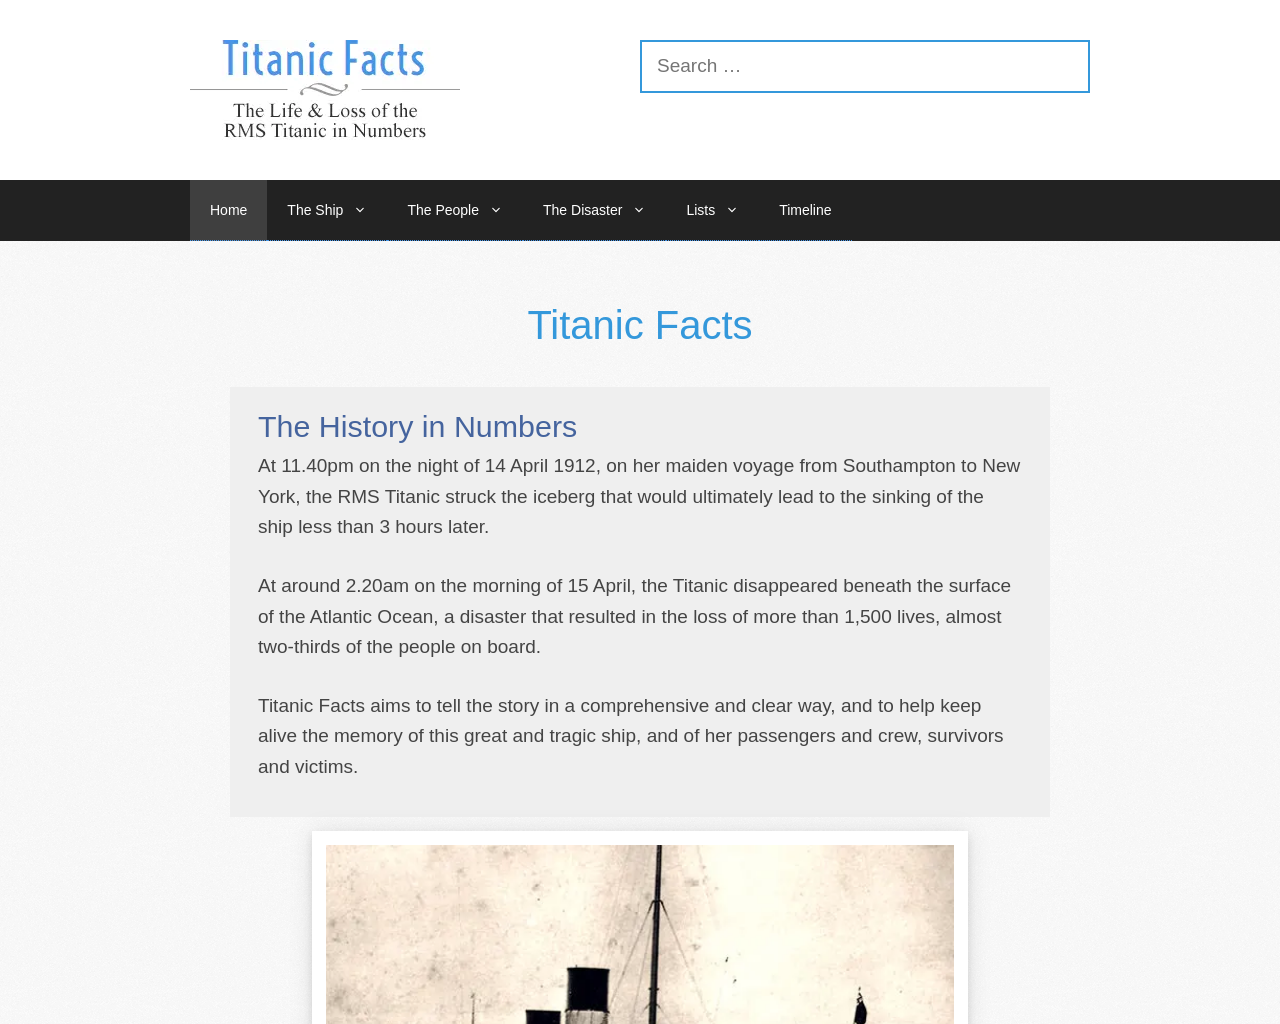 Titanic Facts by Mr McAuley